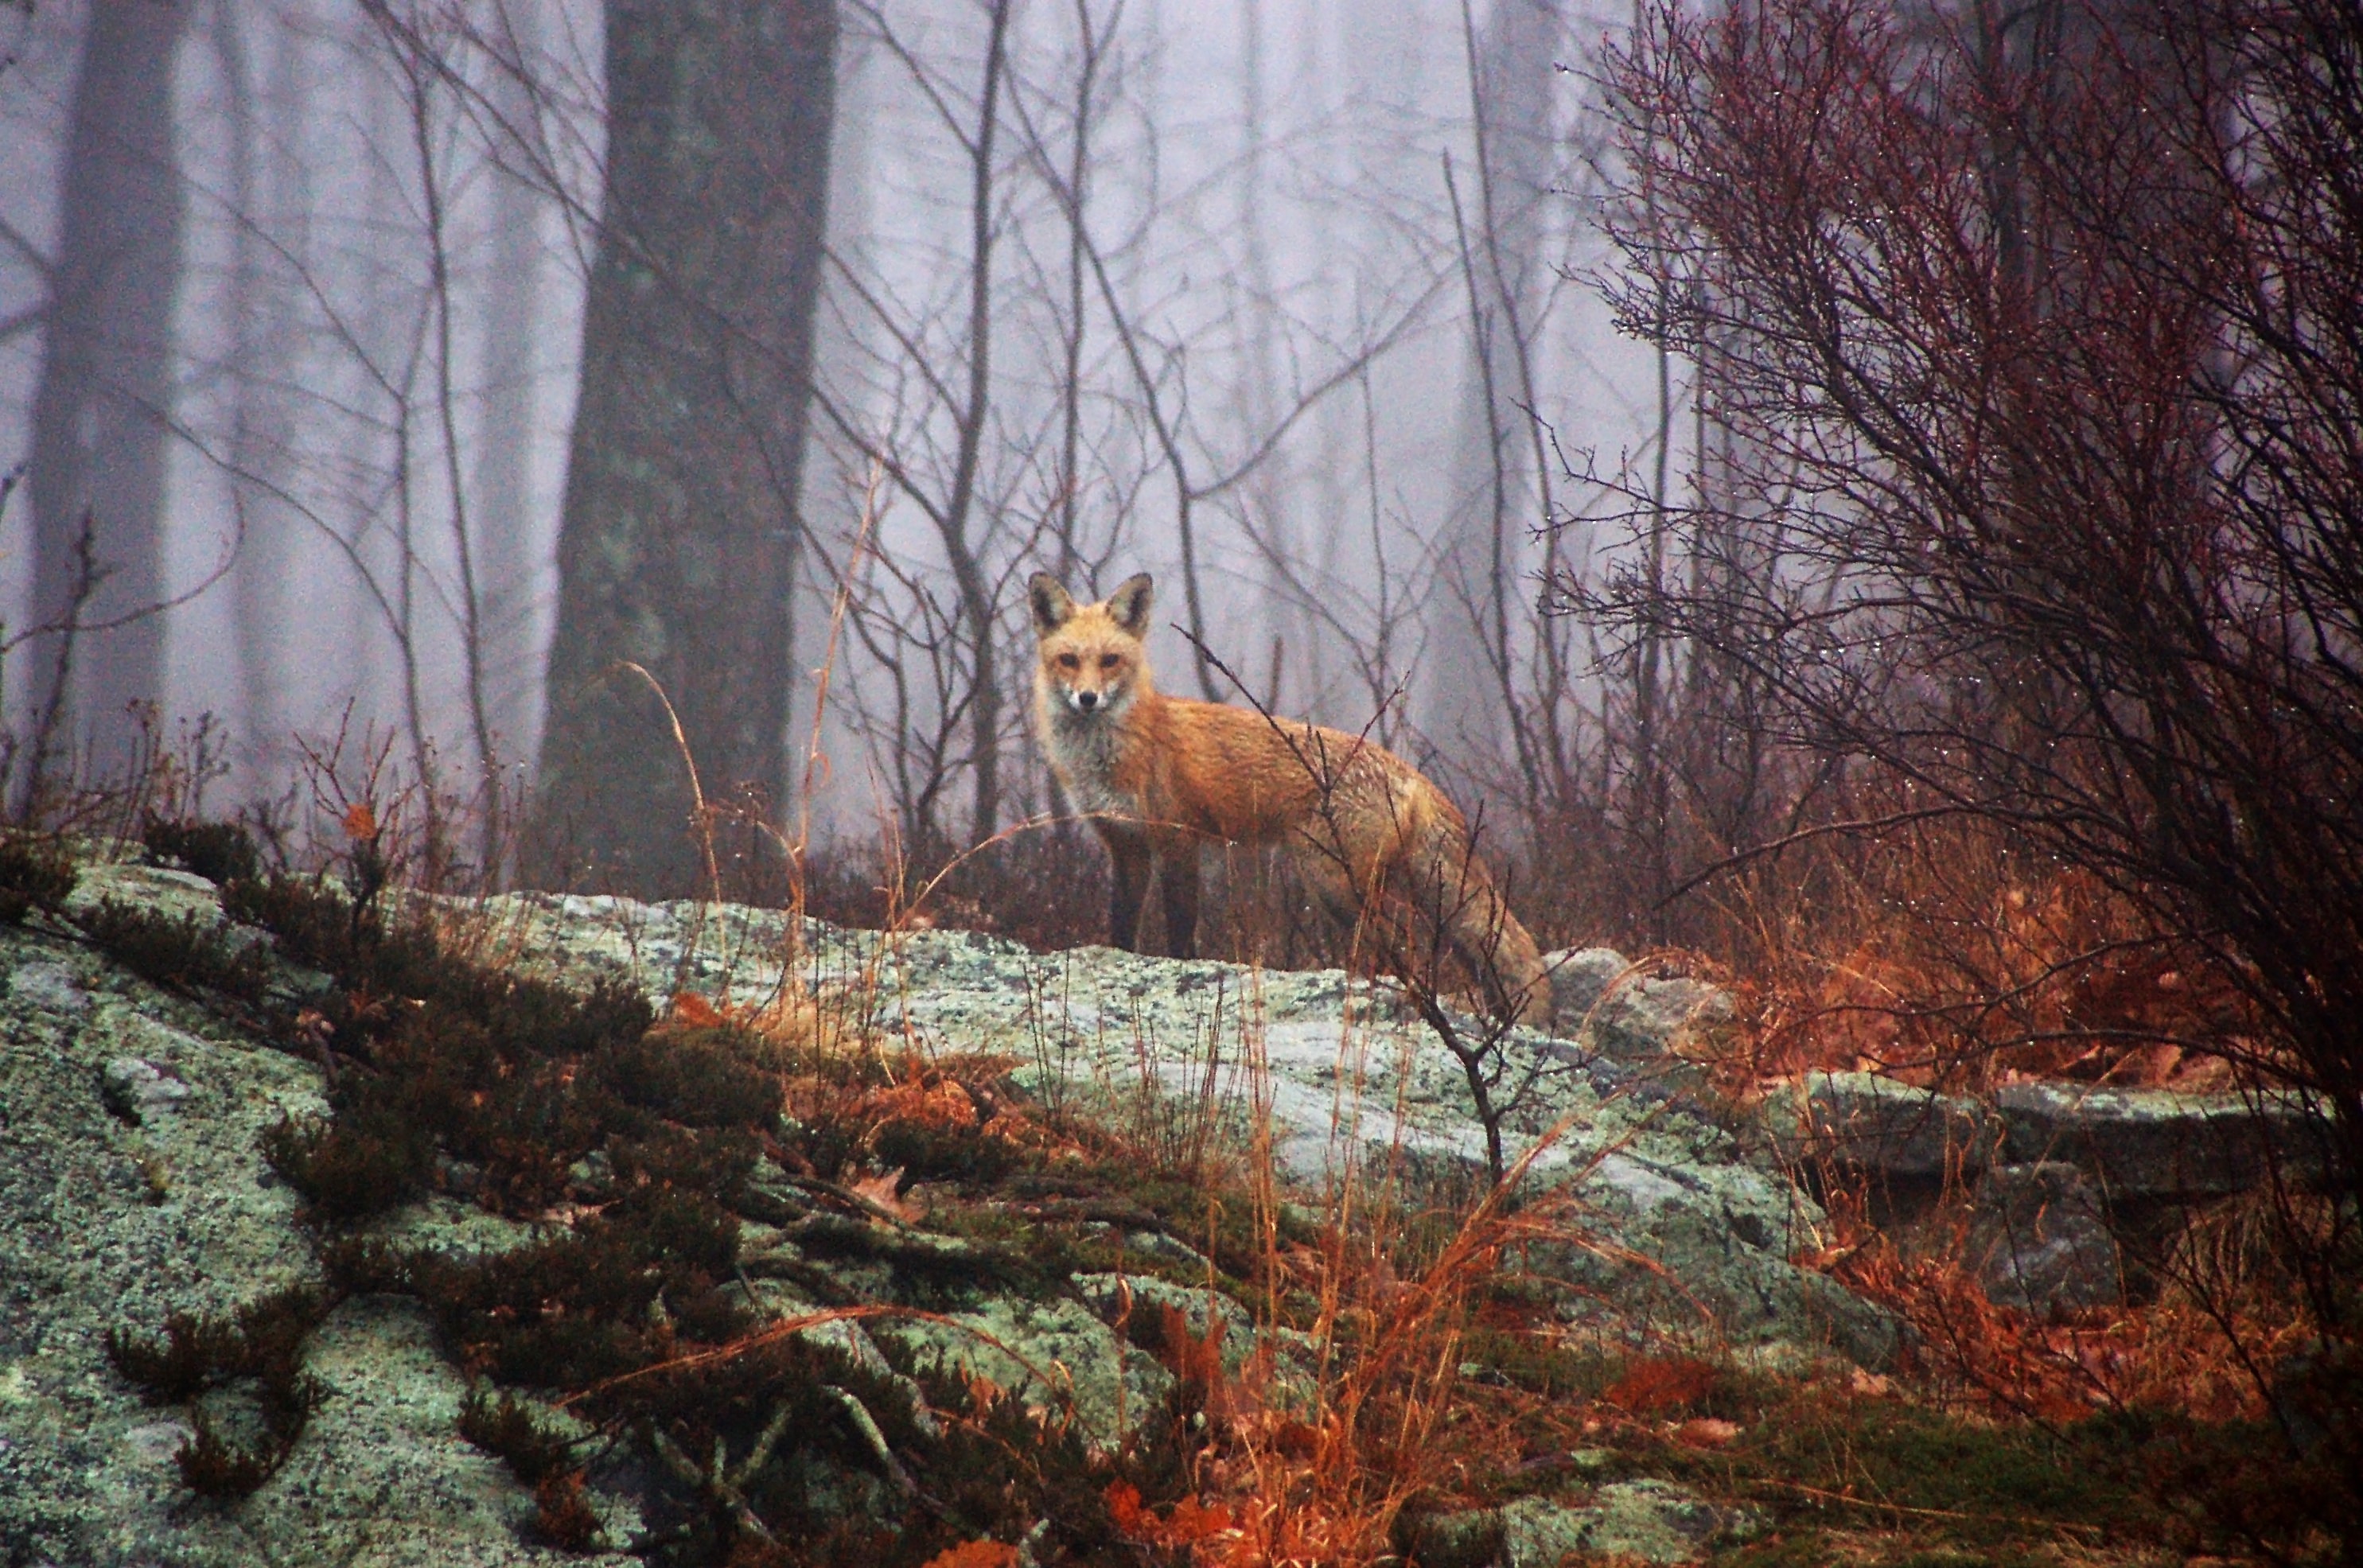 General 2970x1971 animals mammals fox wildlife mist forest fall wet dew